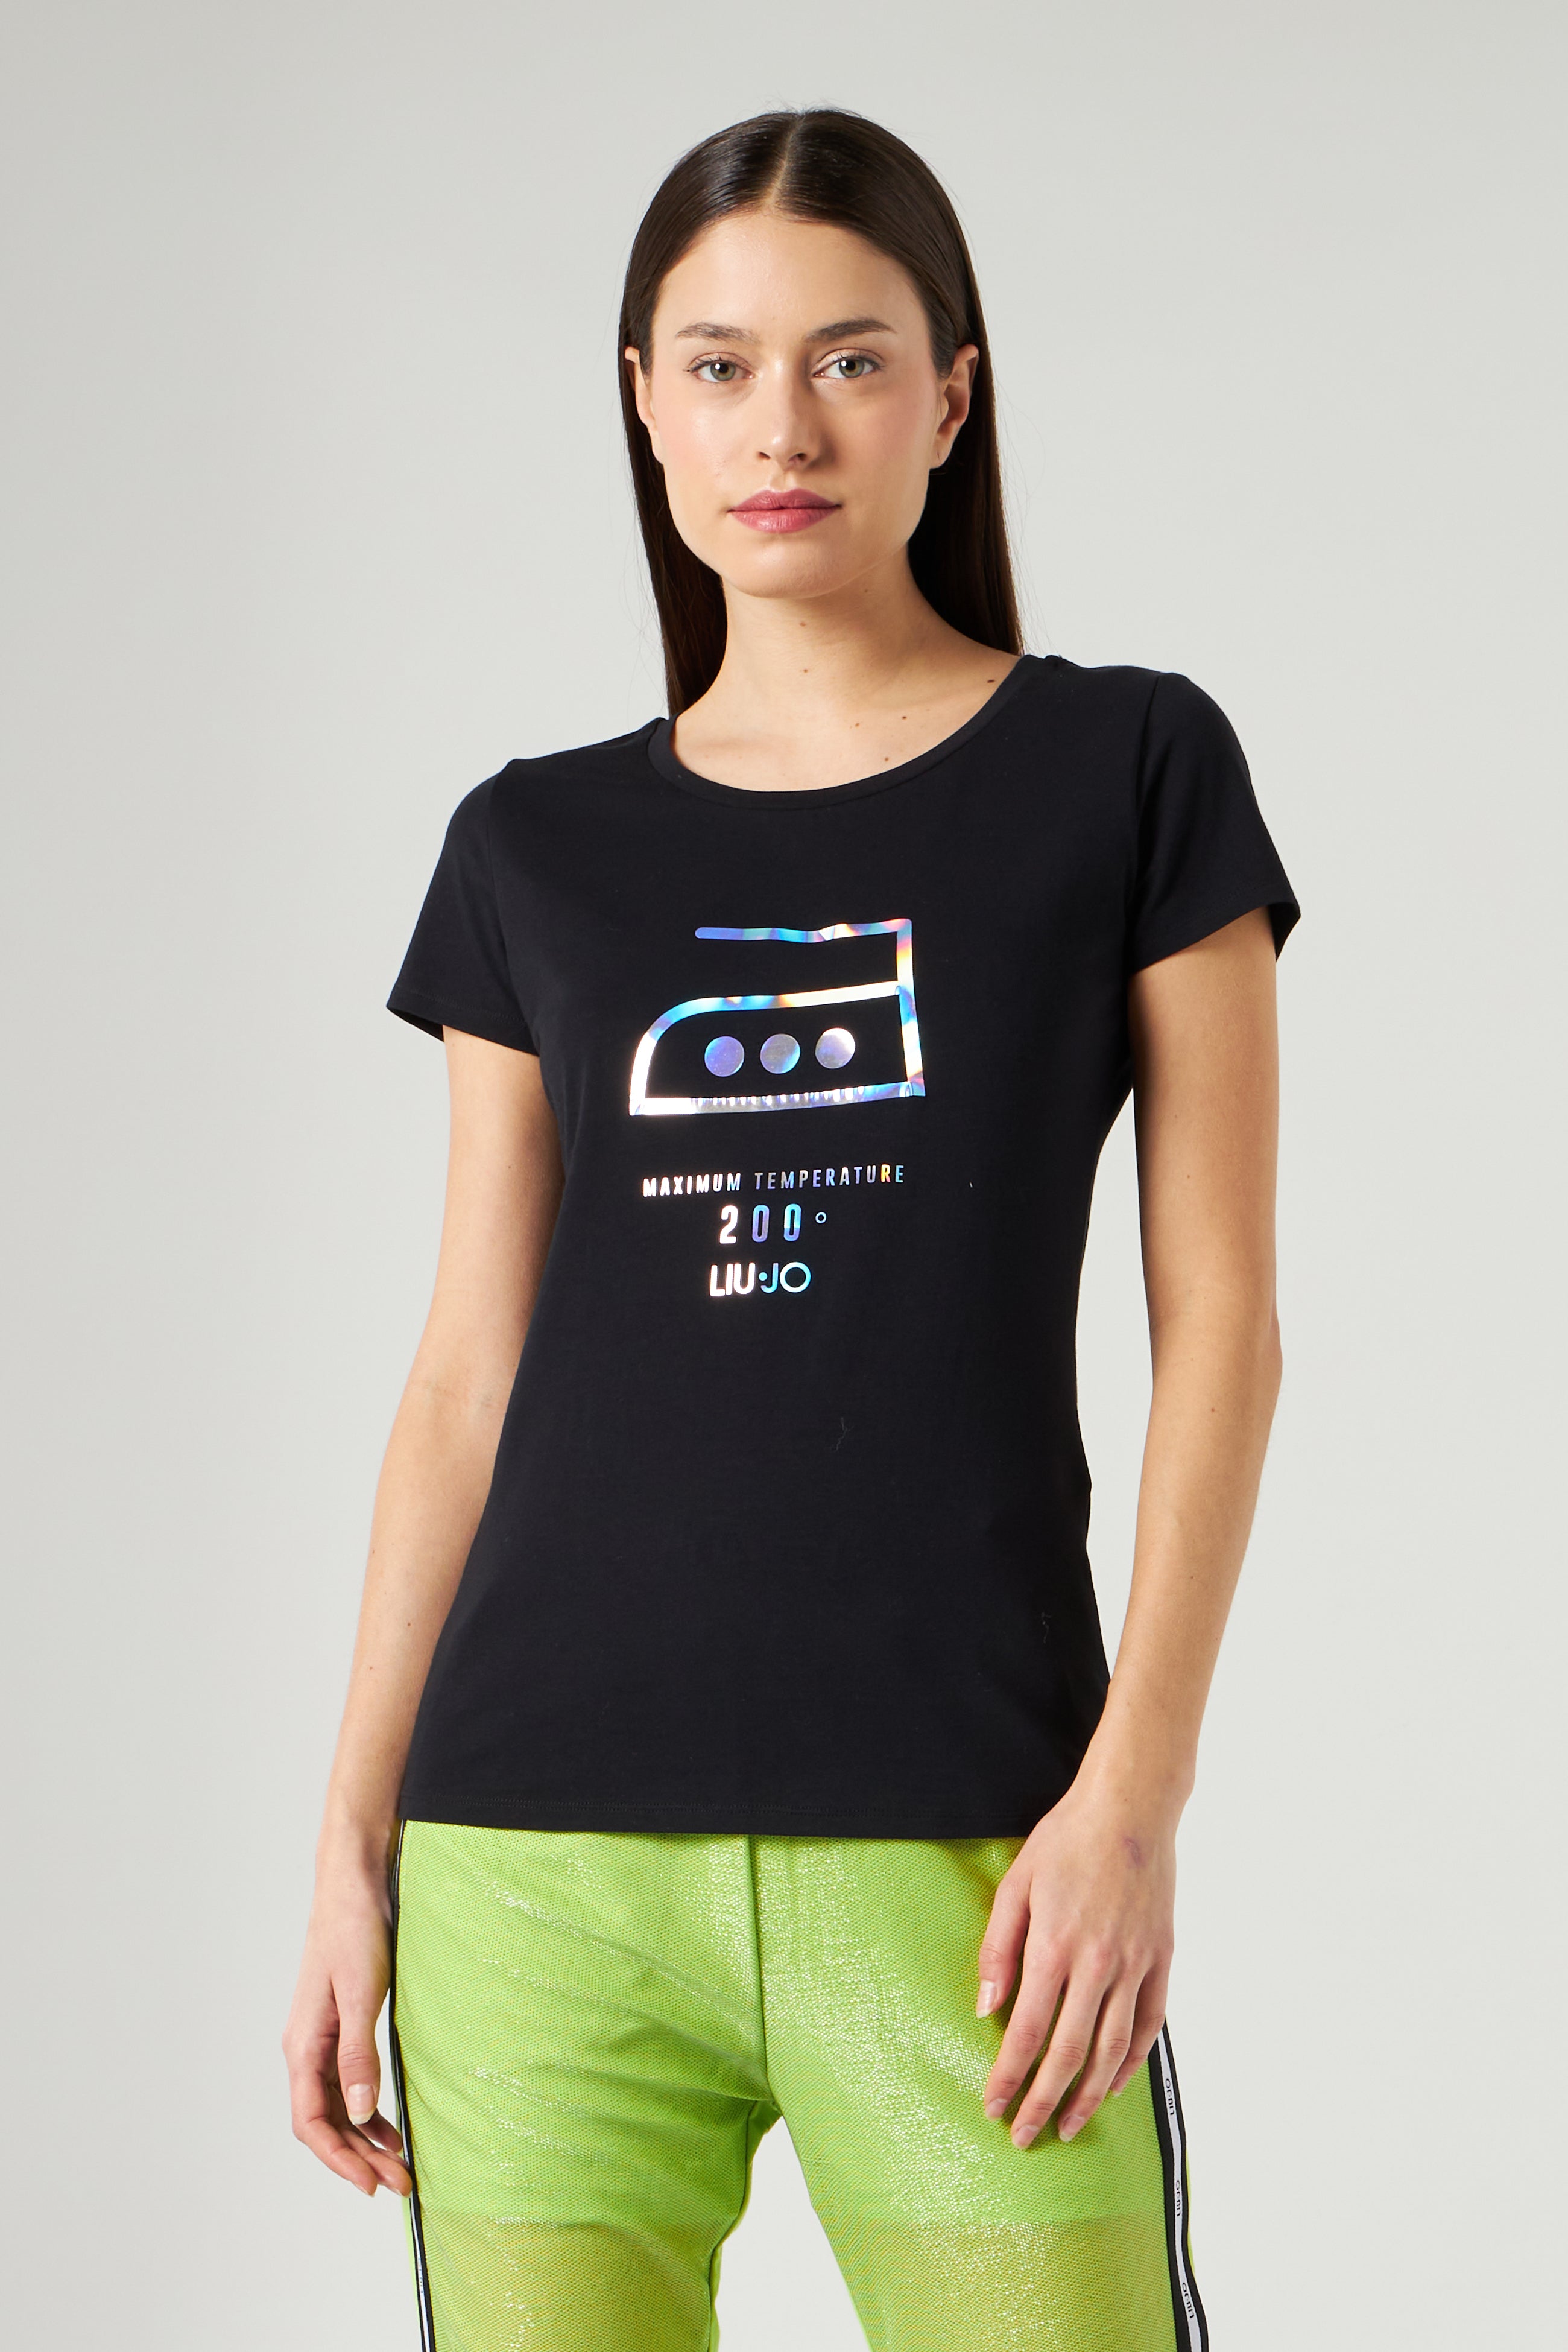 LIU JO Black T-shirt with Print